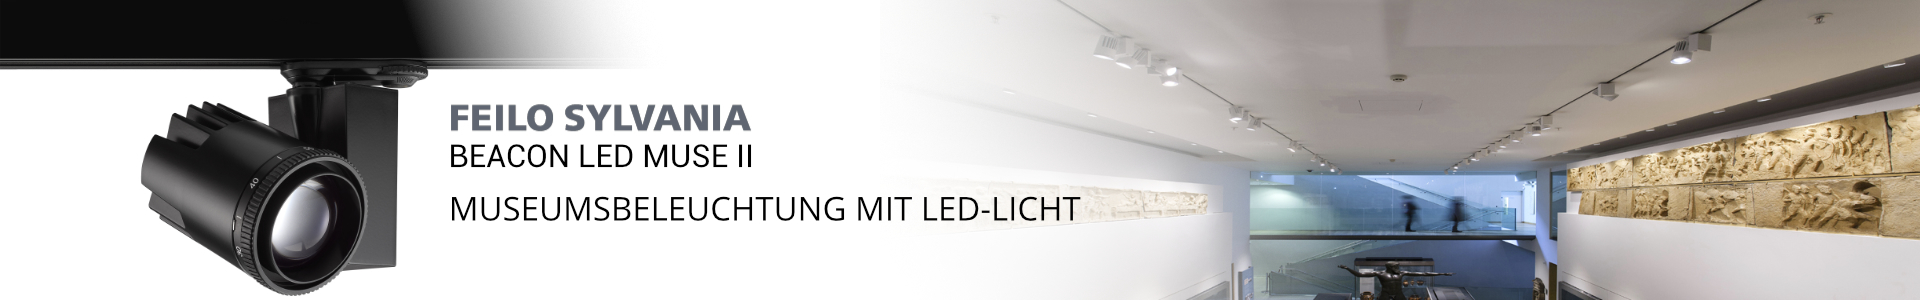 LED-Beleuchtung für Museum und Galerie